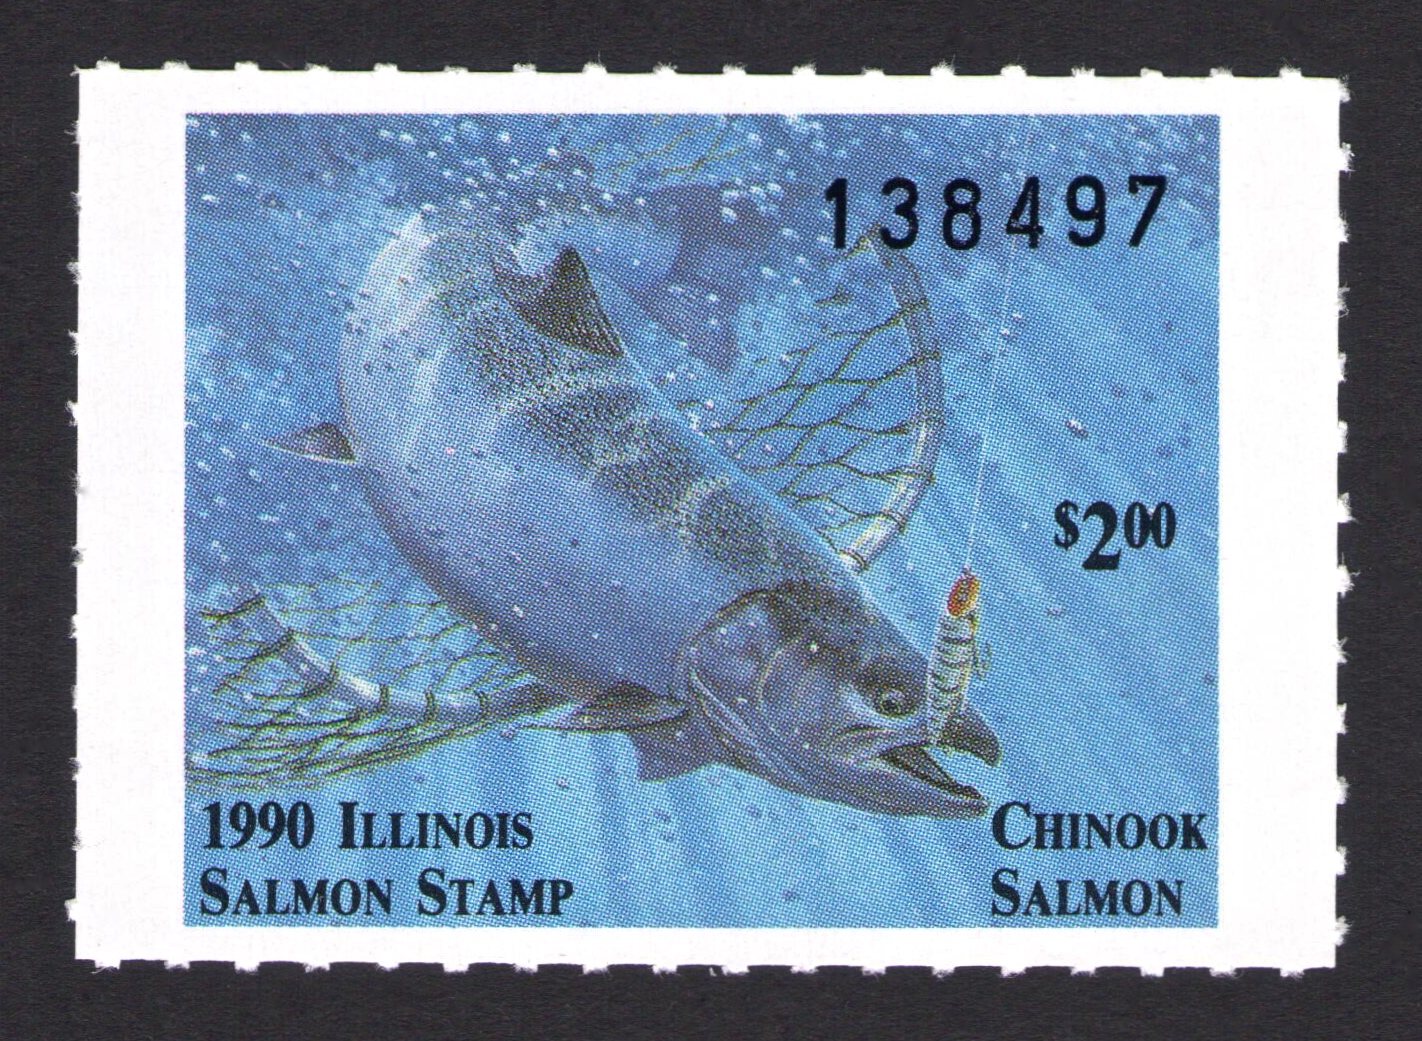 1990 Illinois Salmon